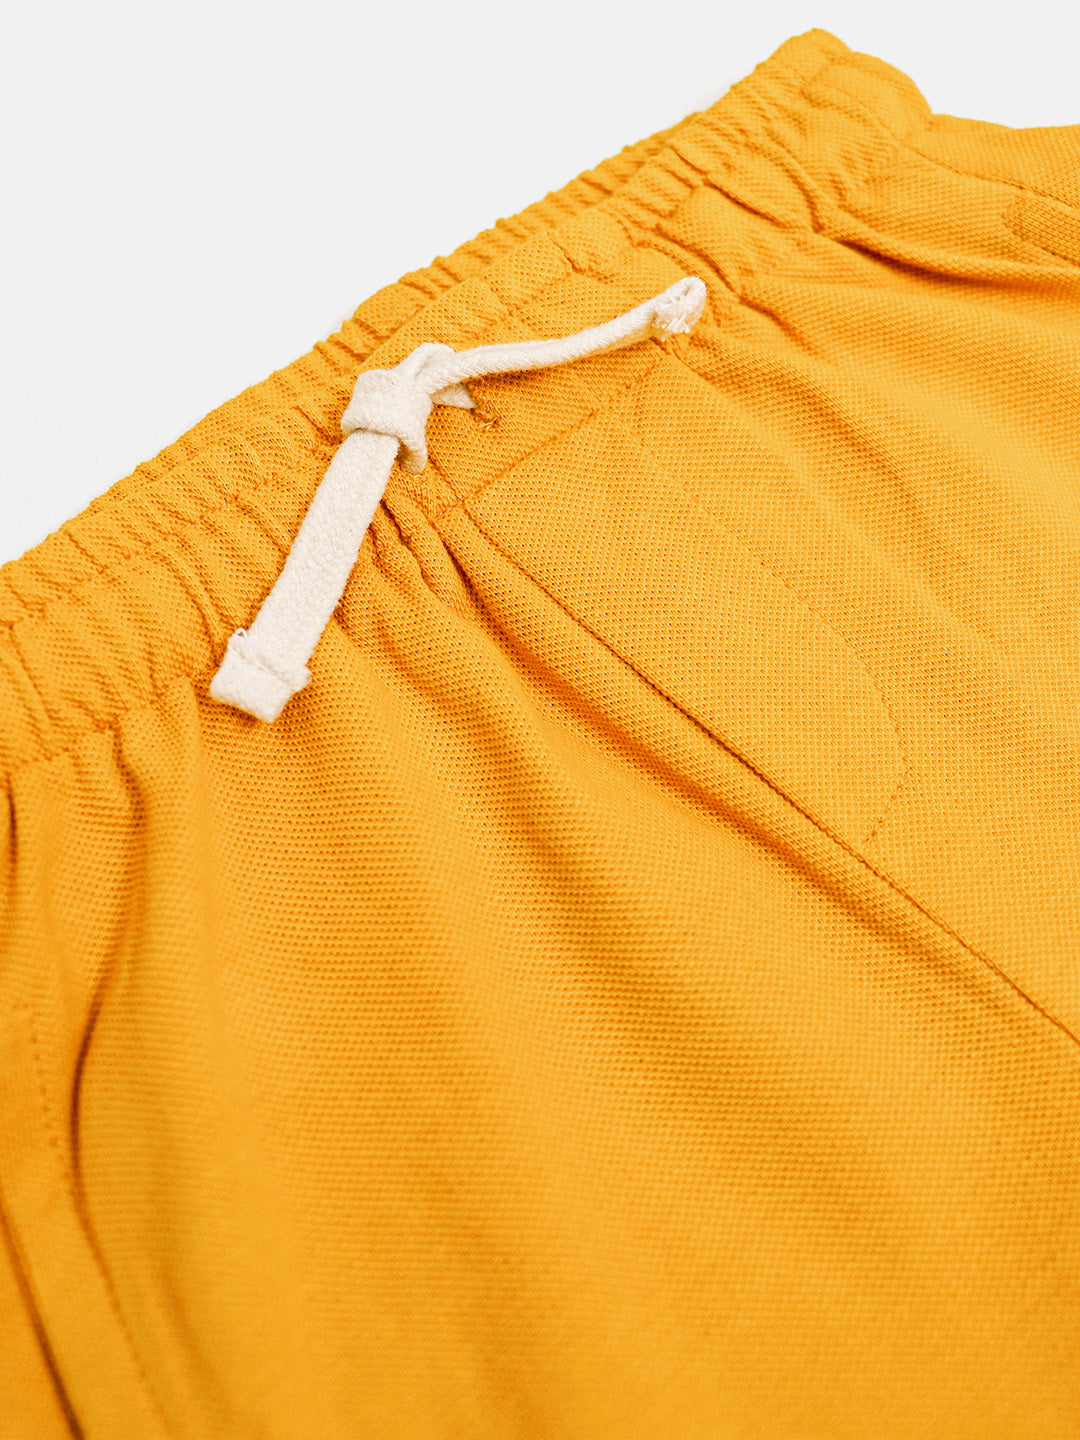 Colourblocked Classic Polo-Shorts Set